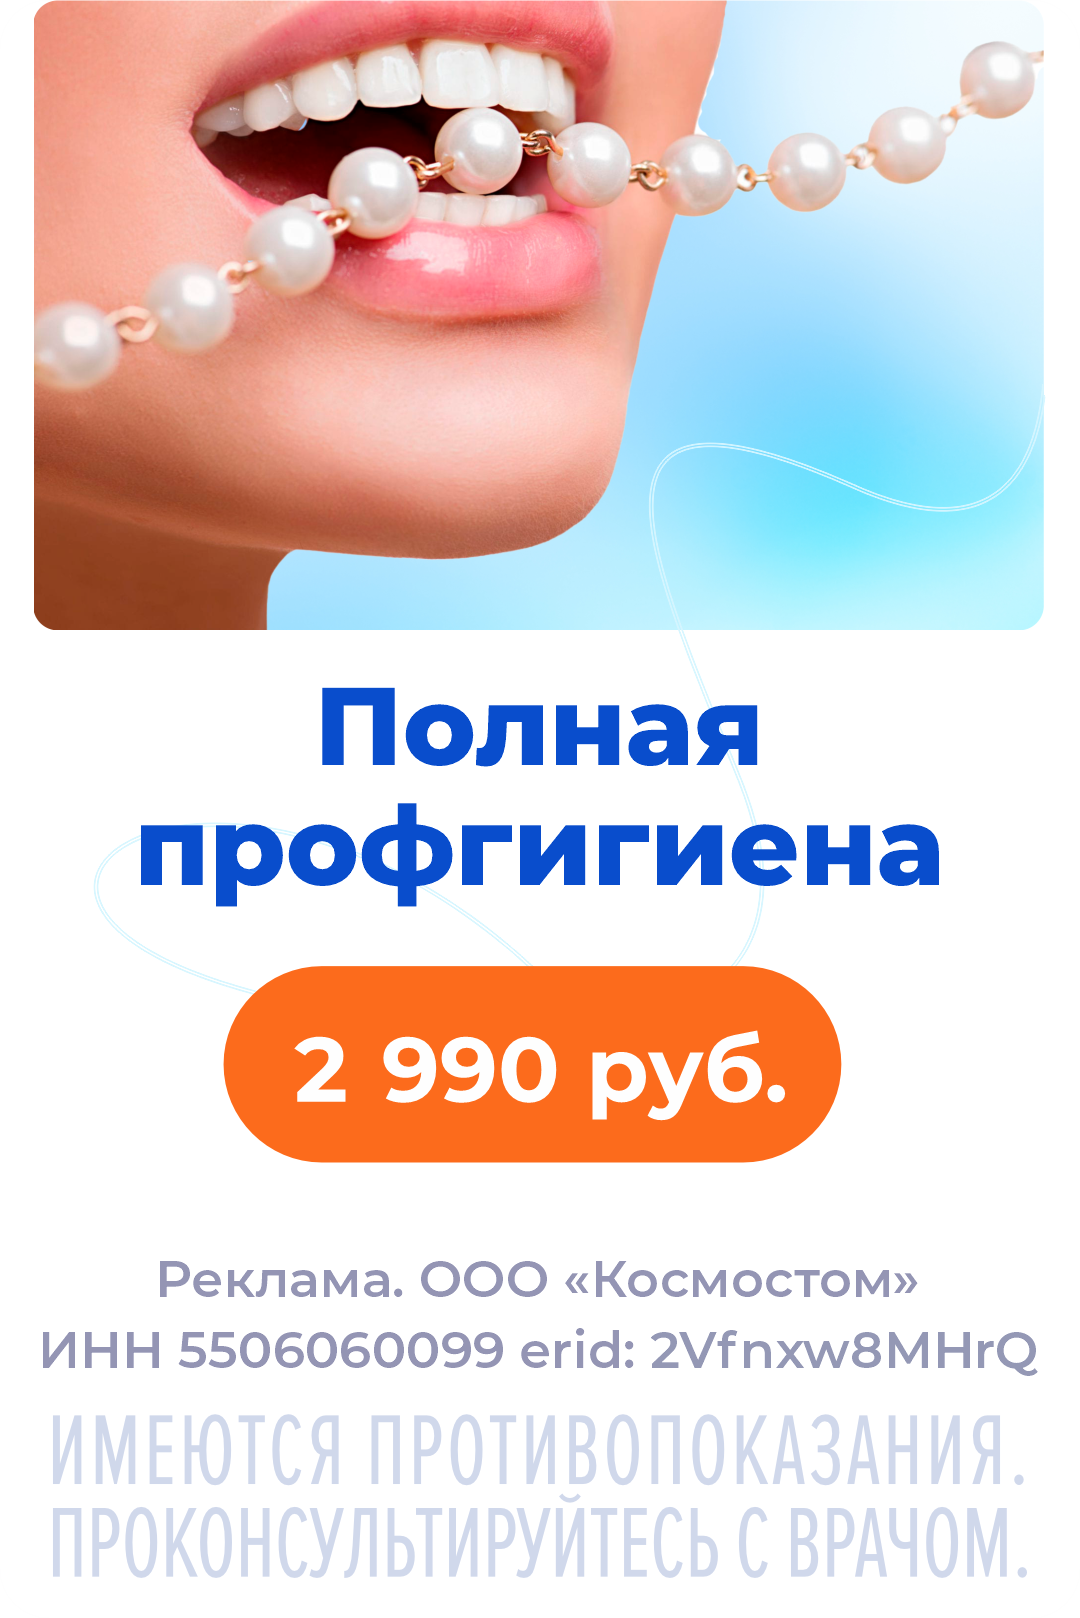 Гигиена полости рта за 2990 рублей!